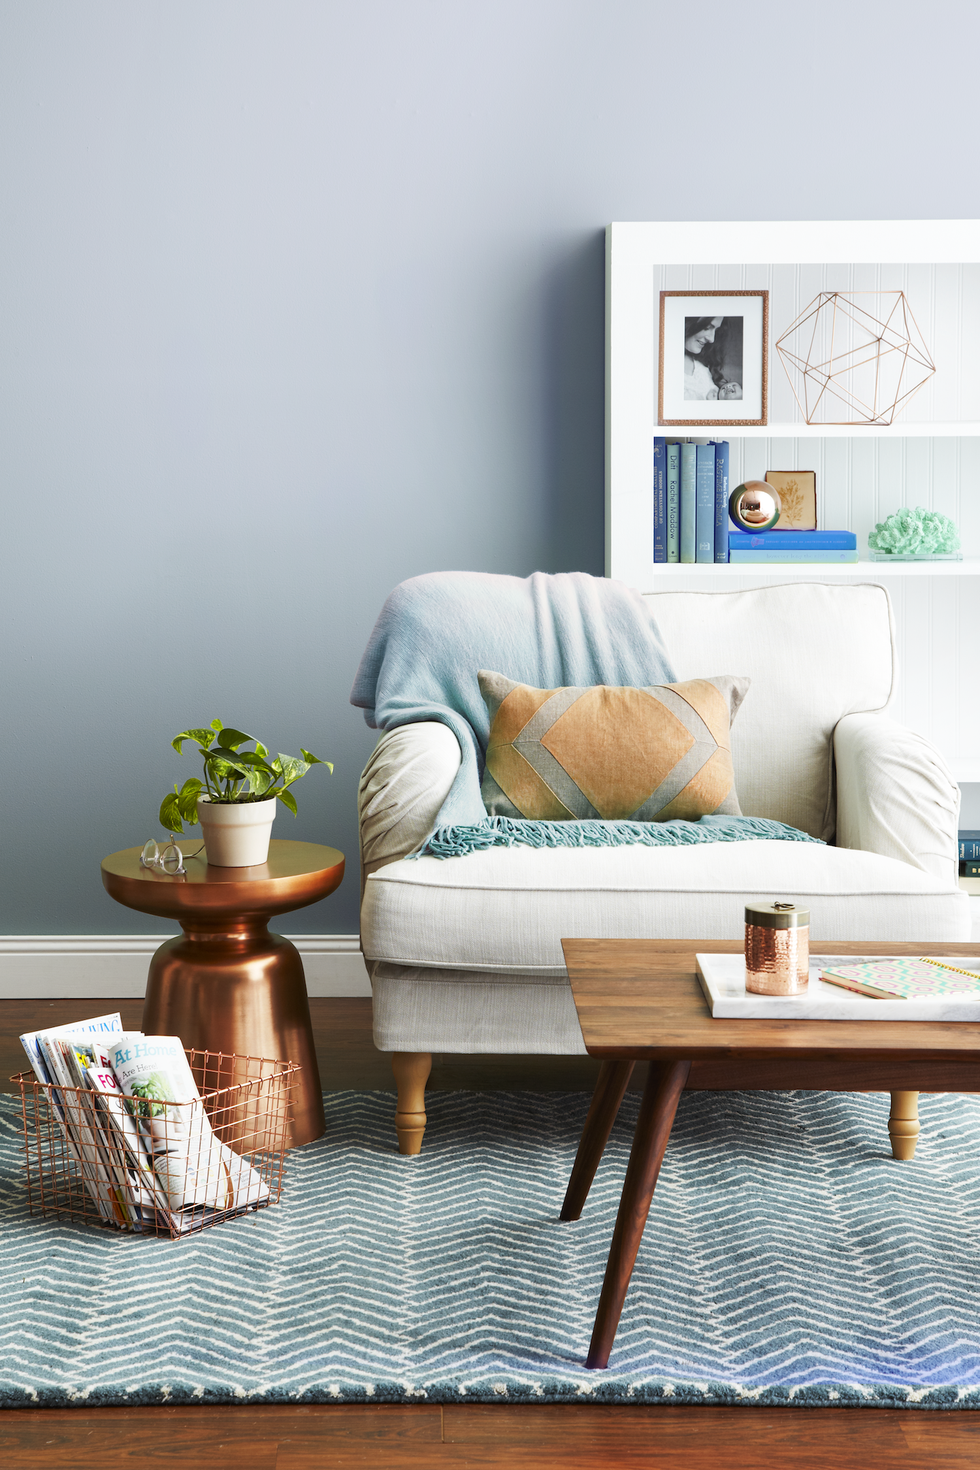 15 Best Living Room Paint Color Ideas - Top Living Room Paint Colors